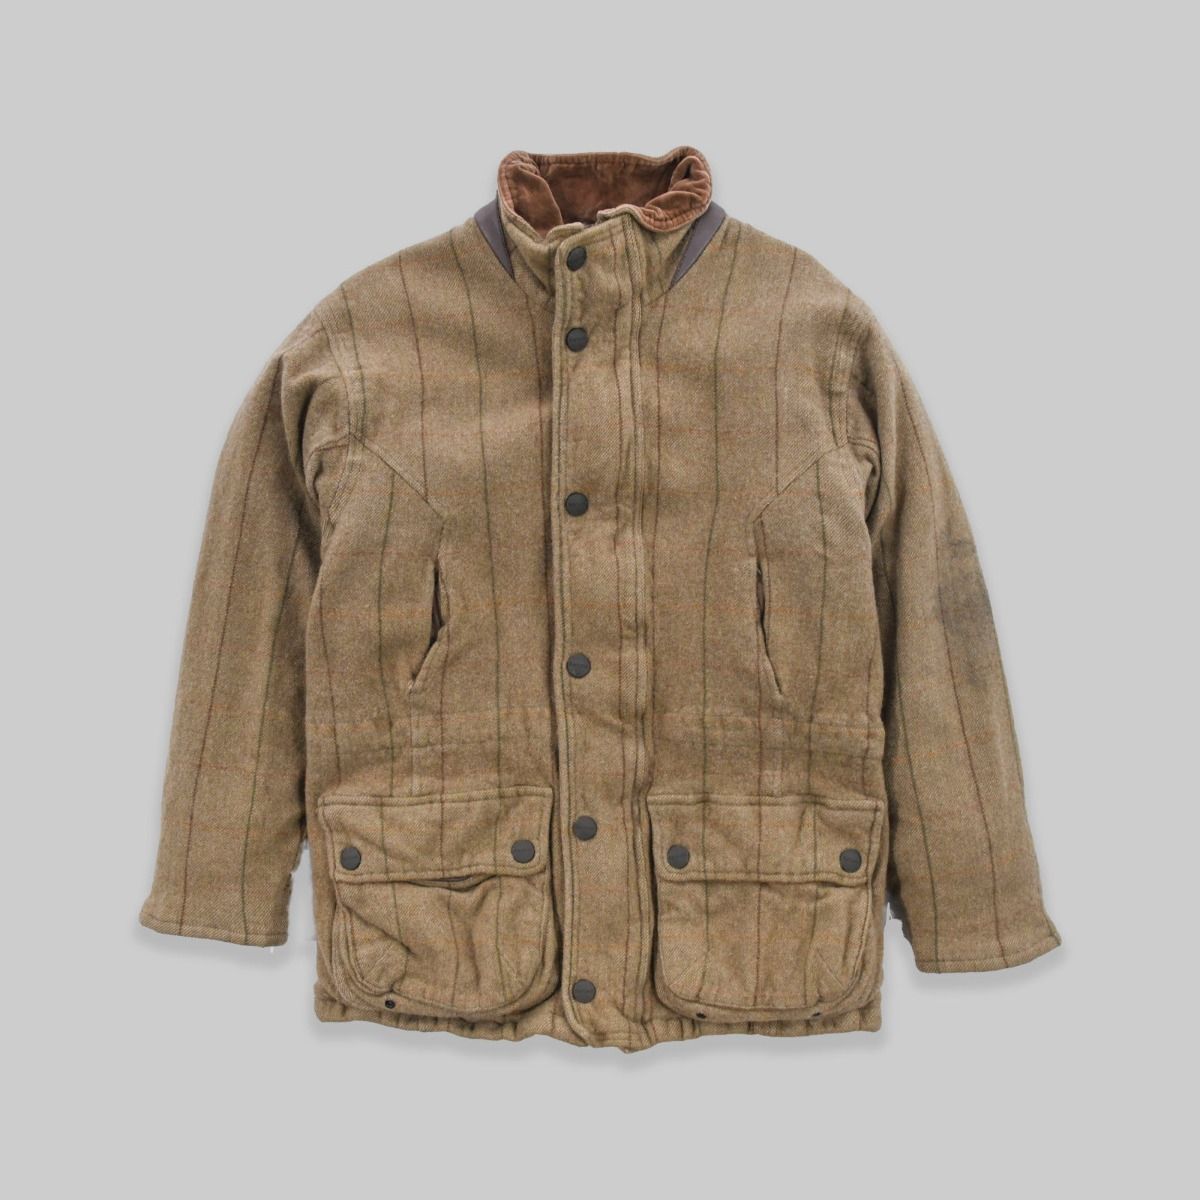 Barbour Wool Jacket